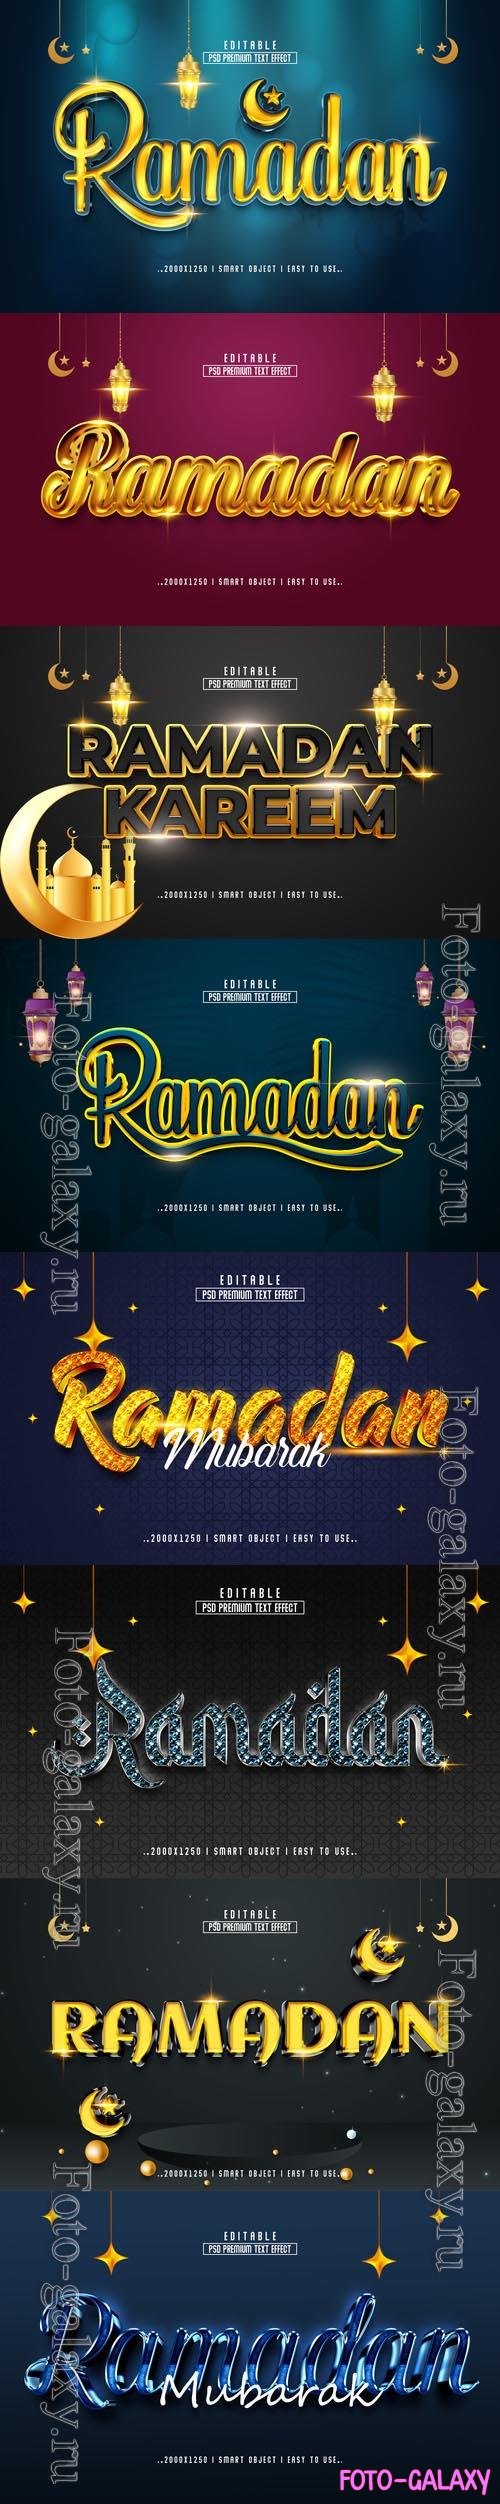 8 Psd Ramadan style text effect editable set vol 1